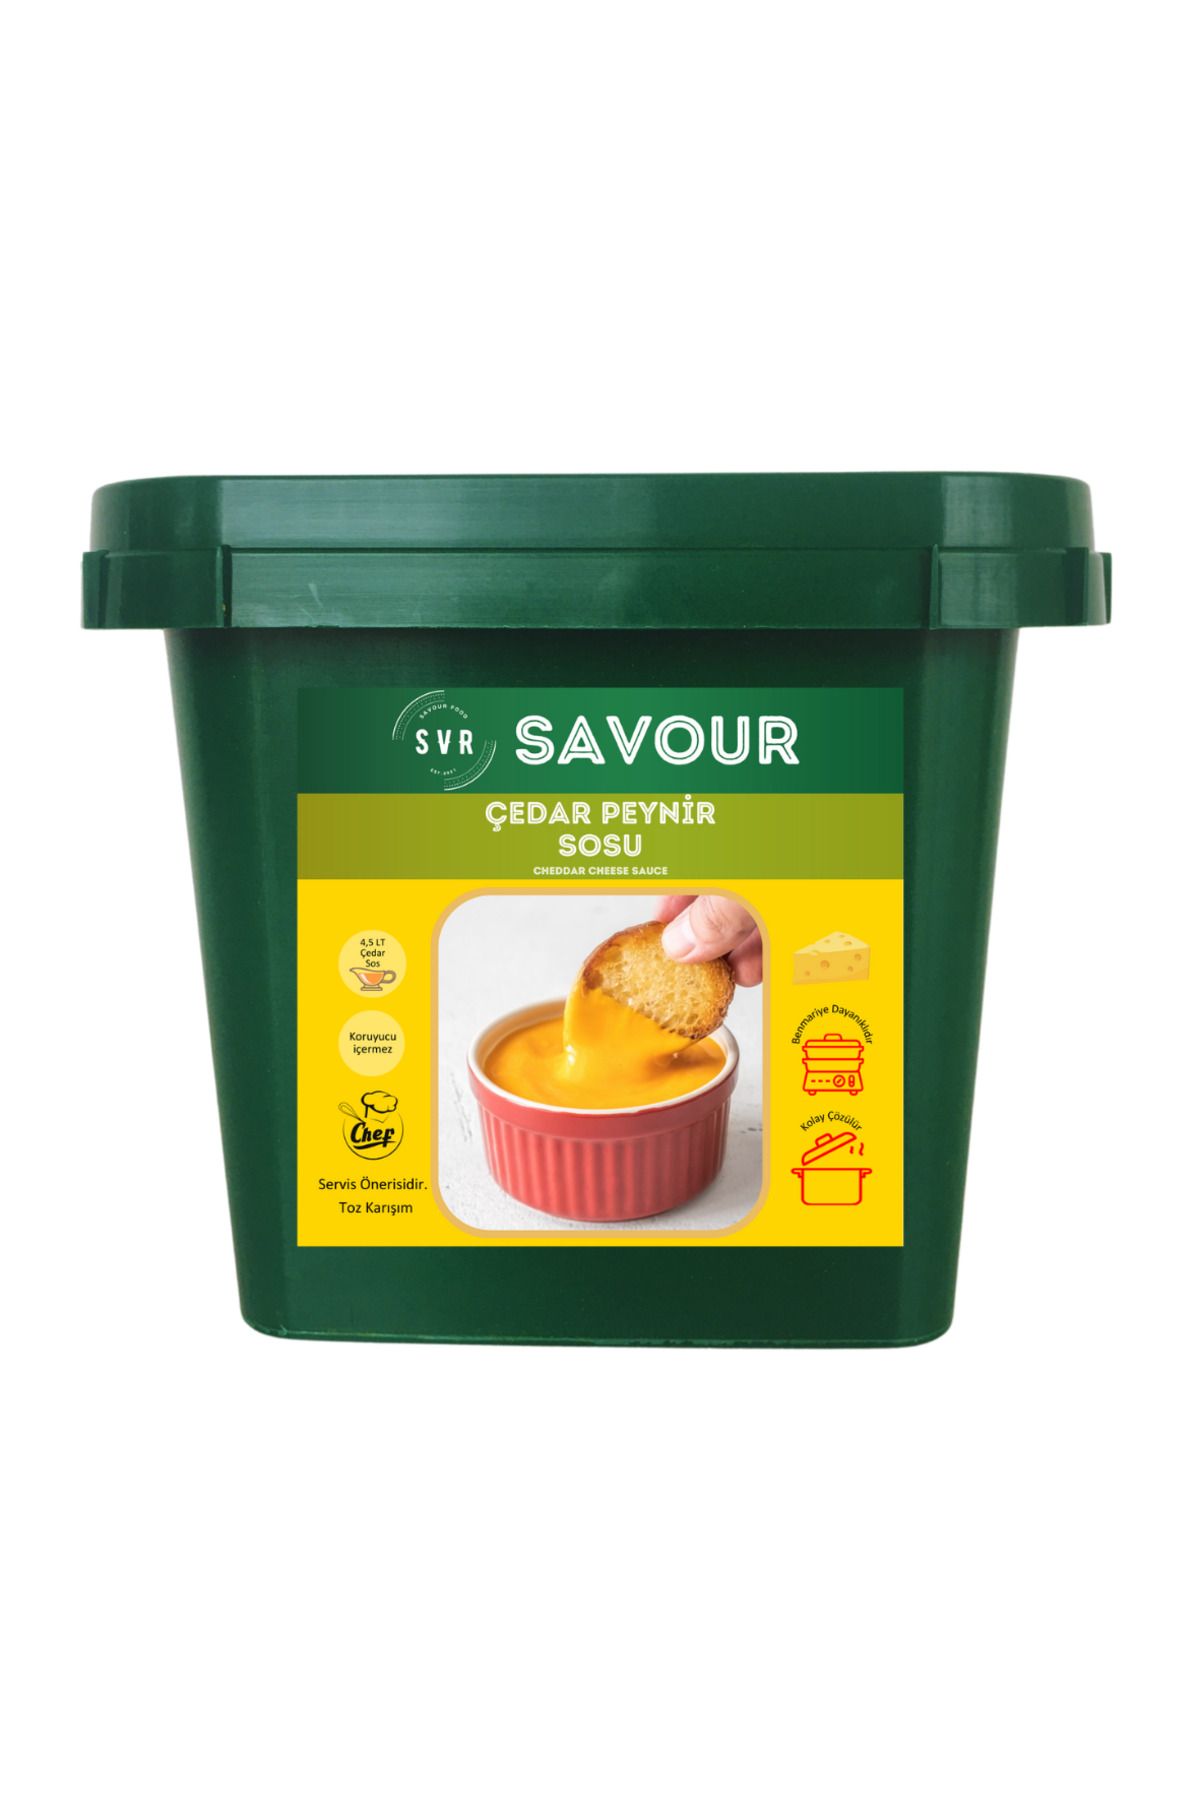 SVR Çedar Peynir Sosu ( Cheddar ) Toz Karışım - 500 gr